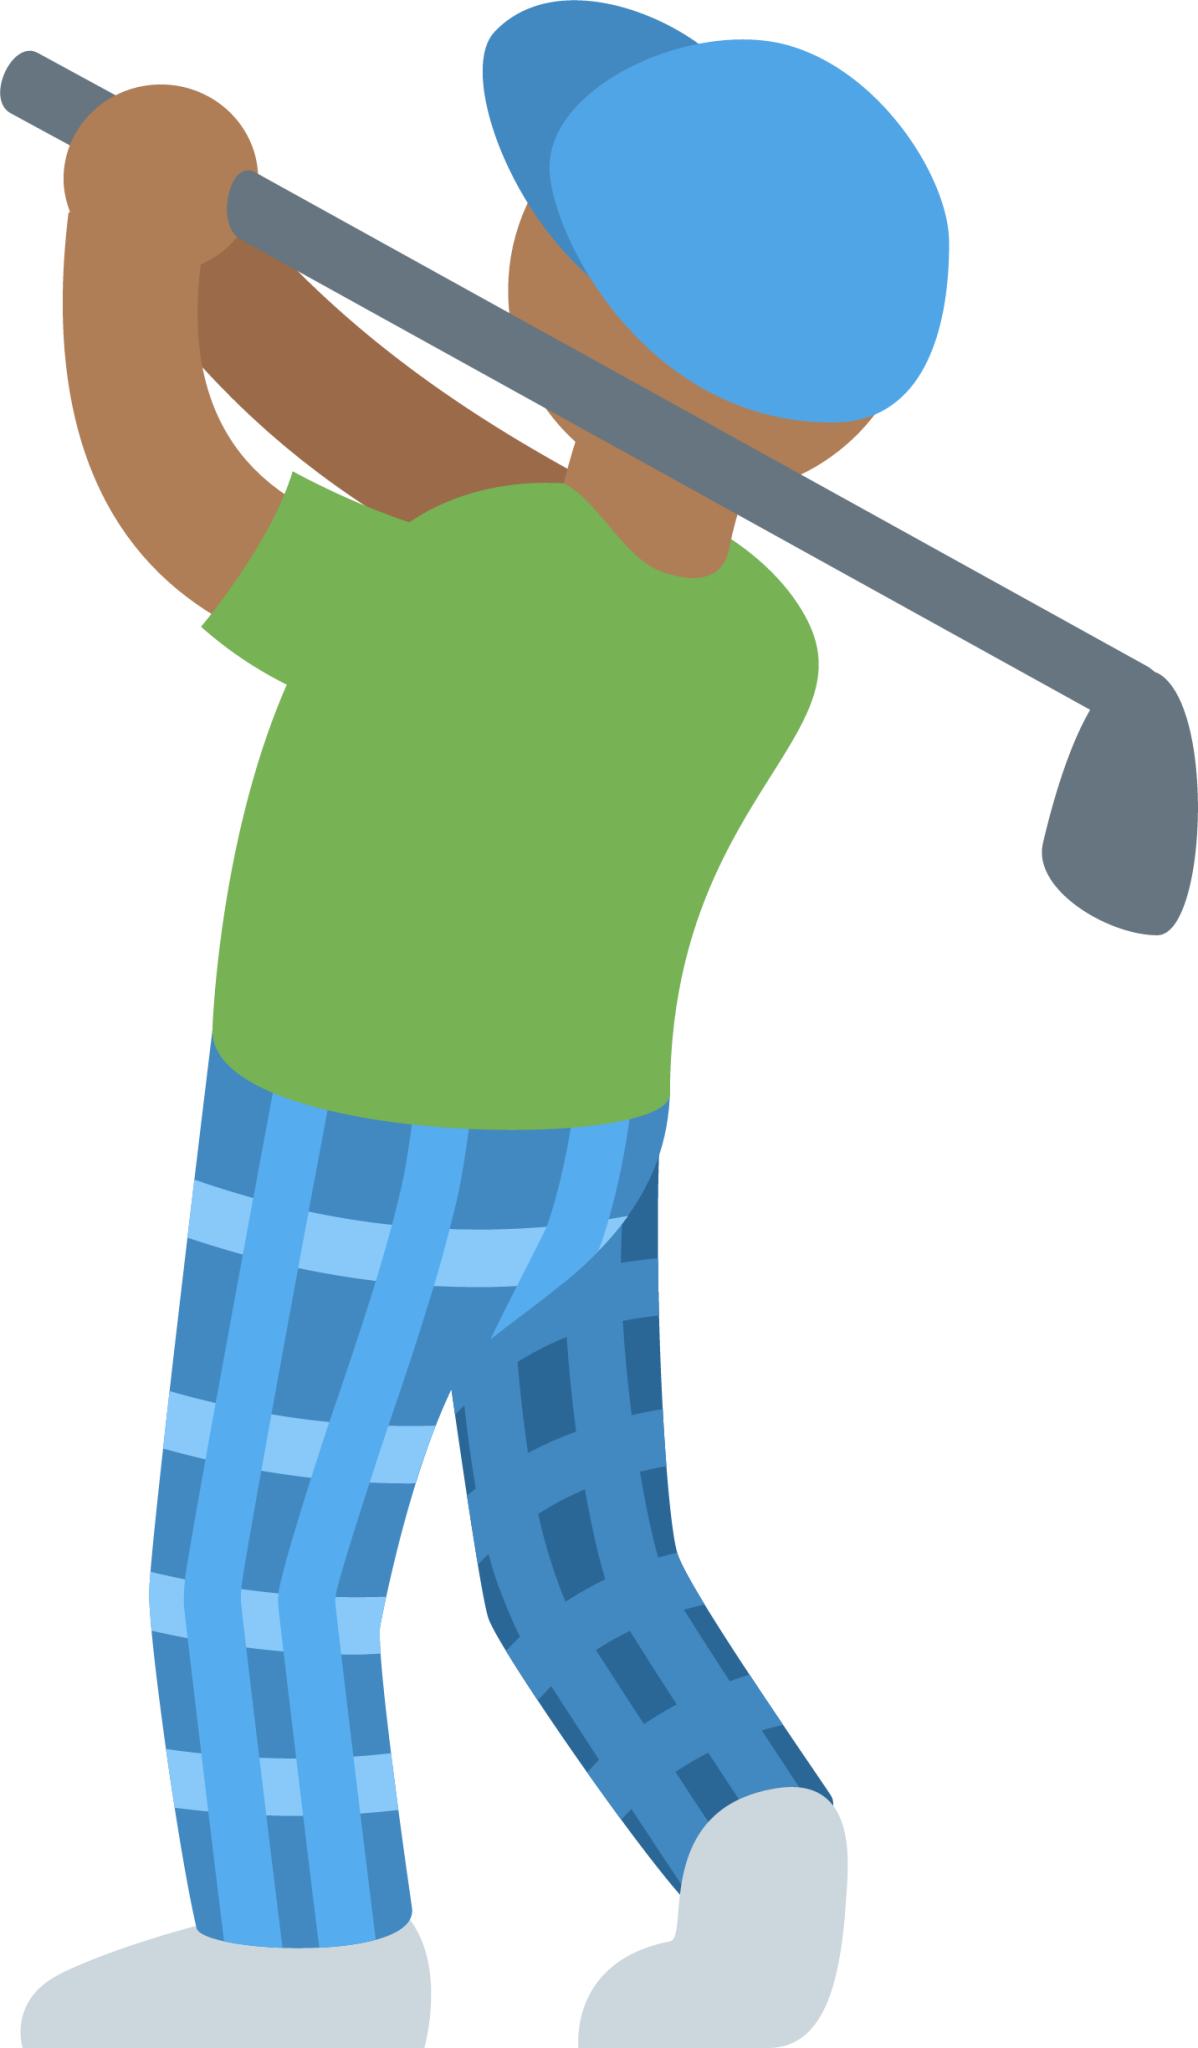 man golfing: medium-dark skin tone emoji